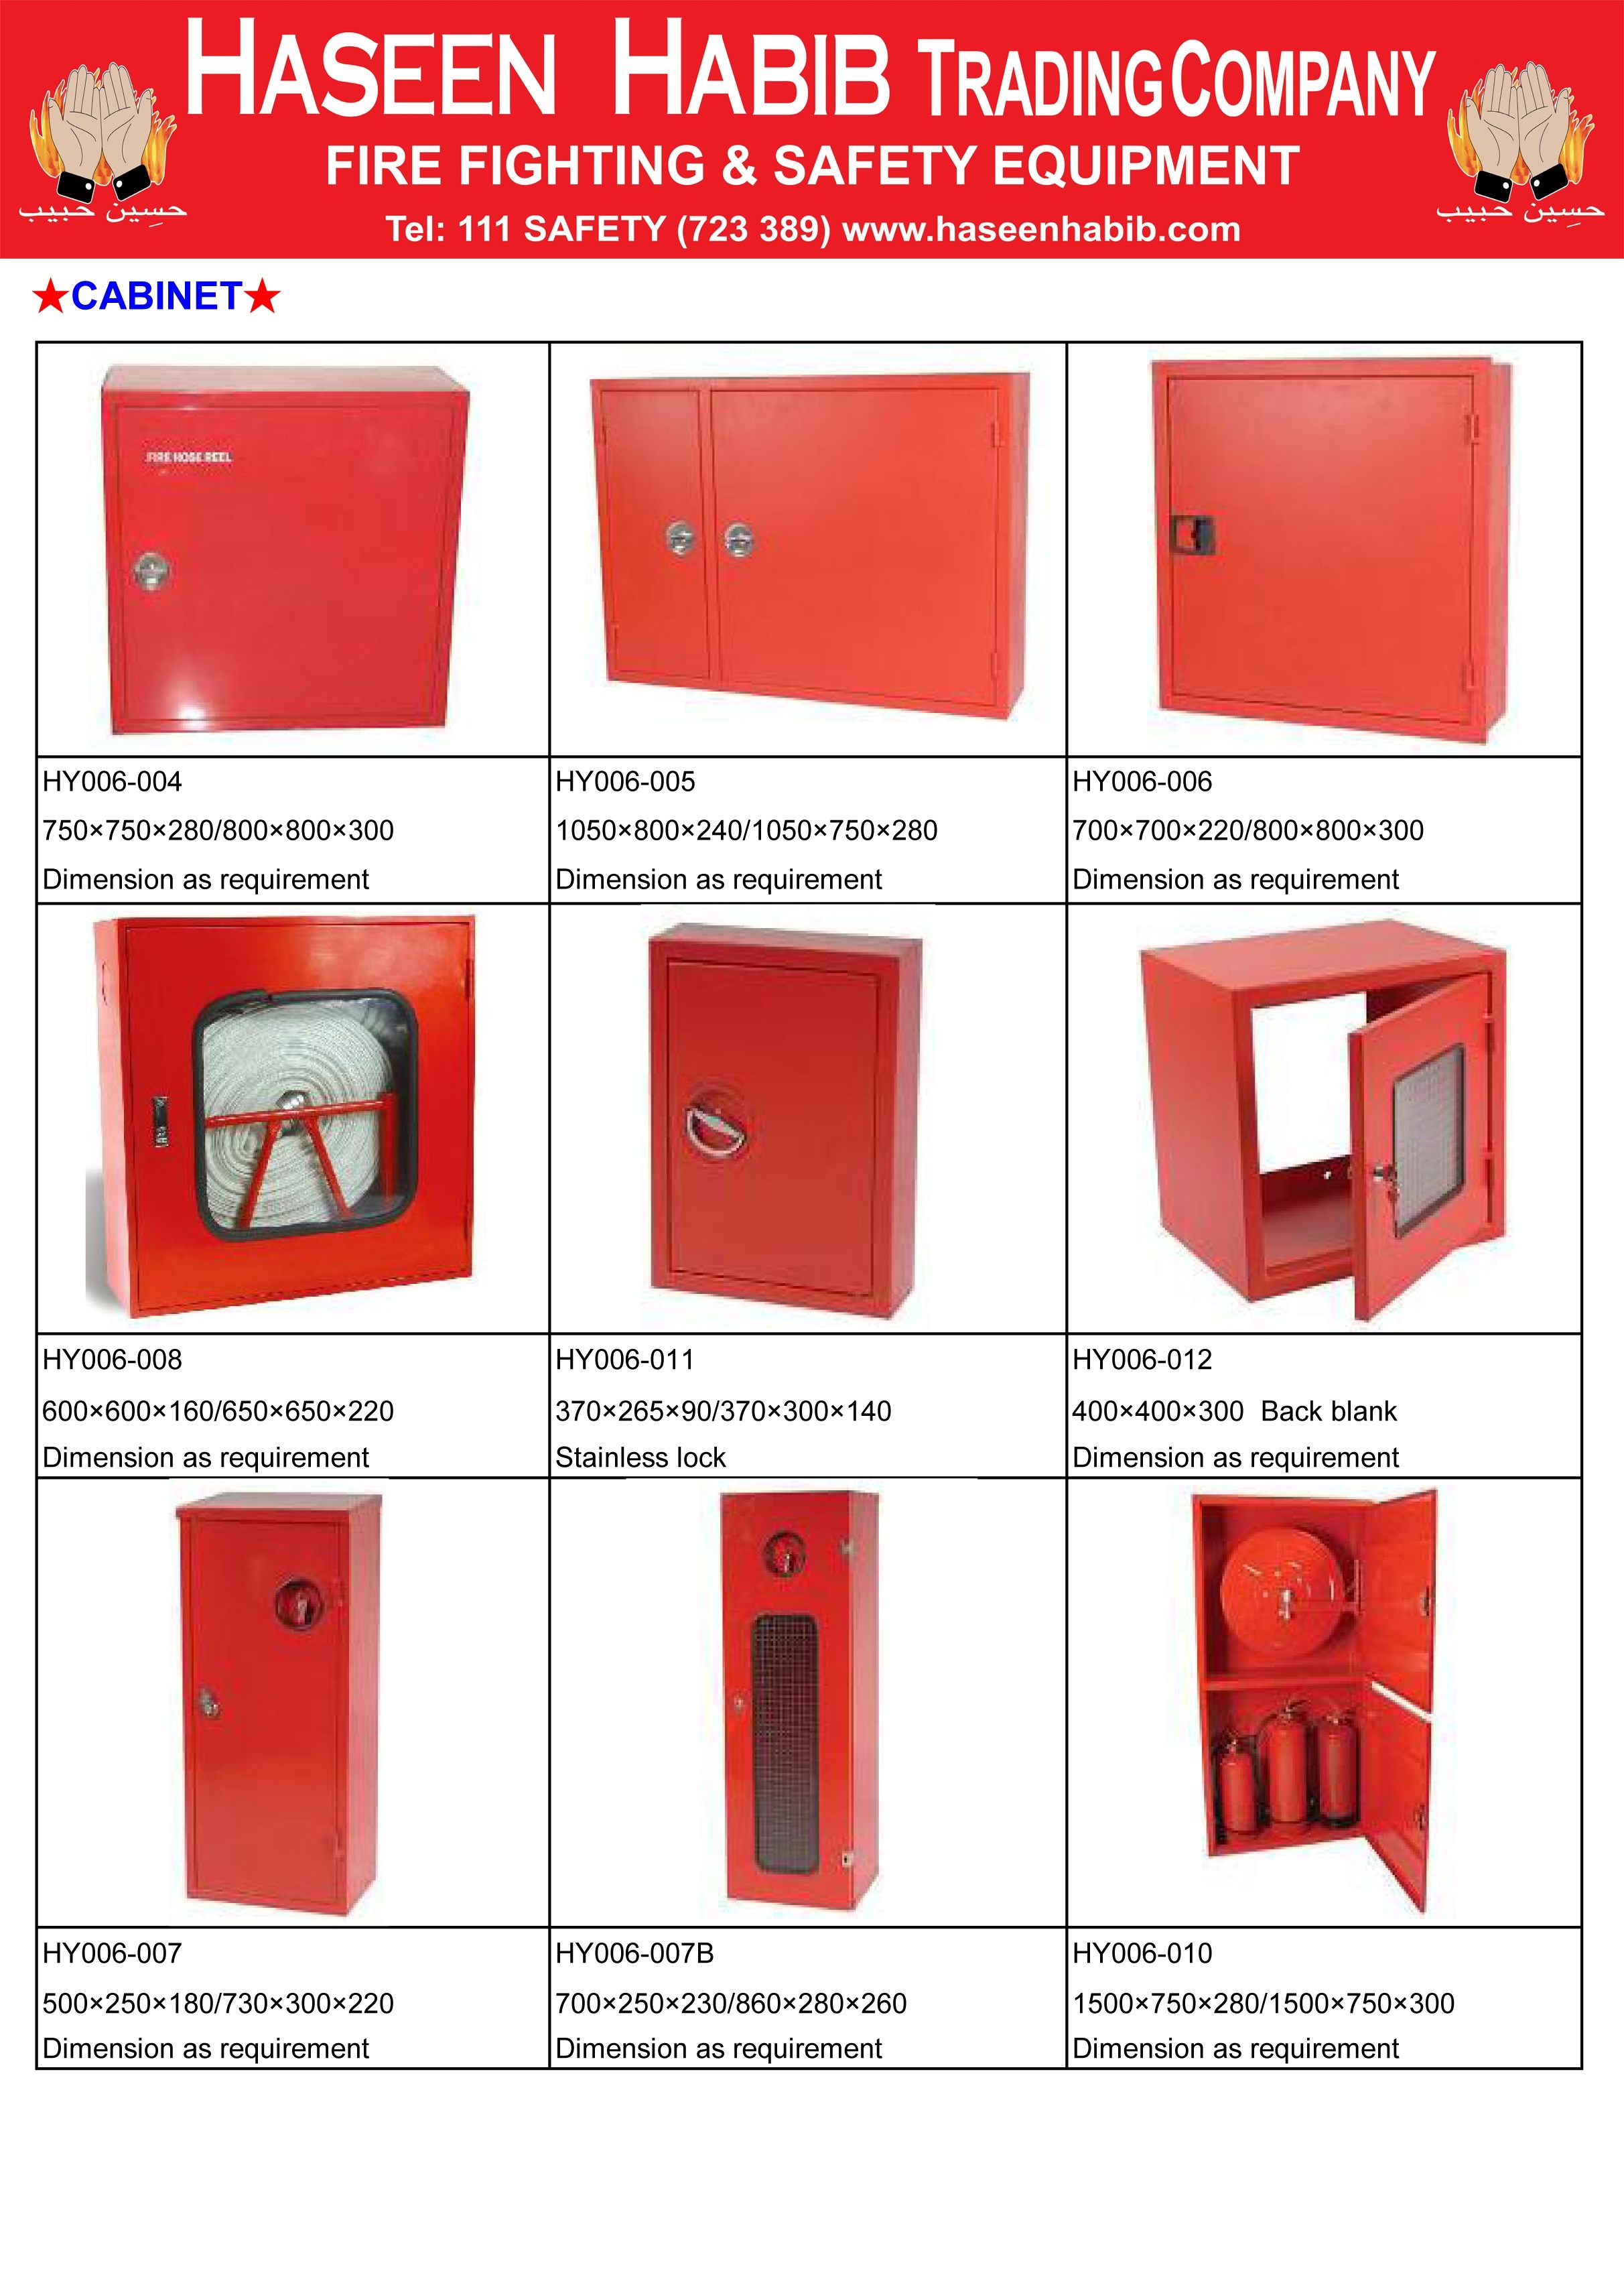 Fire Hose Fire Extinguisher Cabinets Adams Fire Tech Pvt Ltd